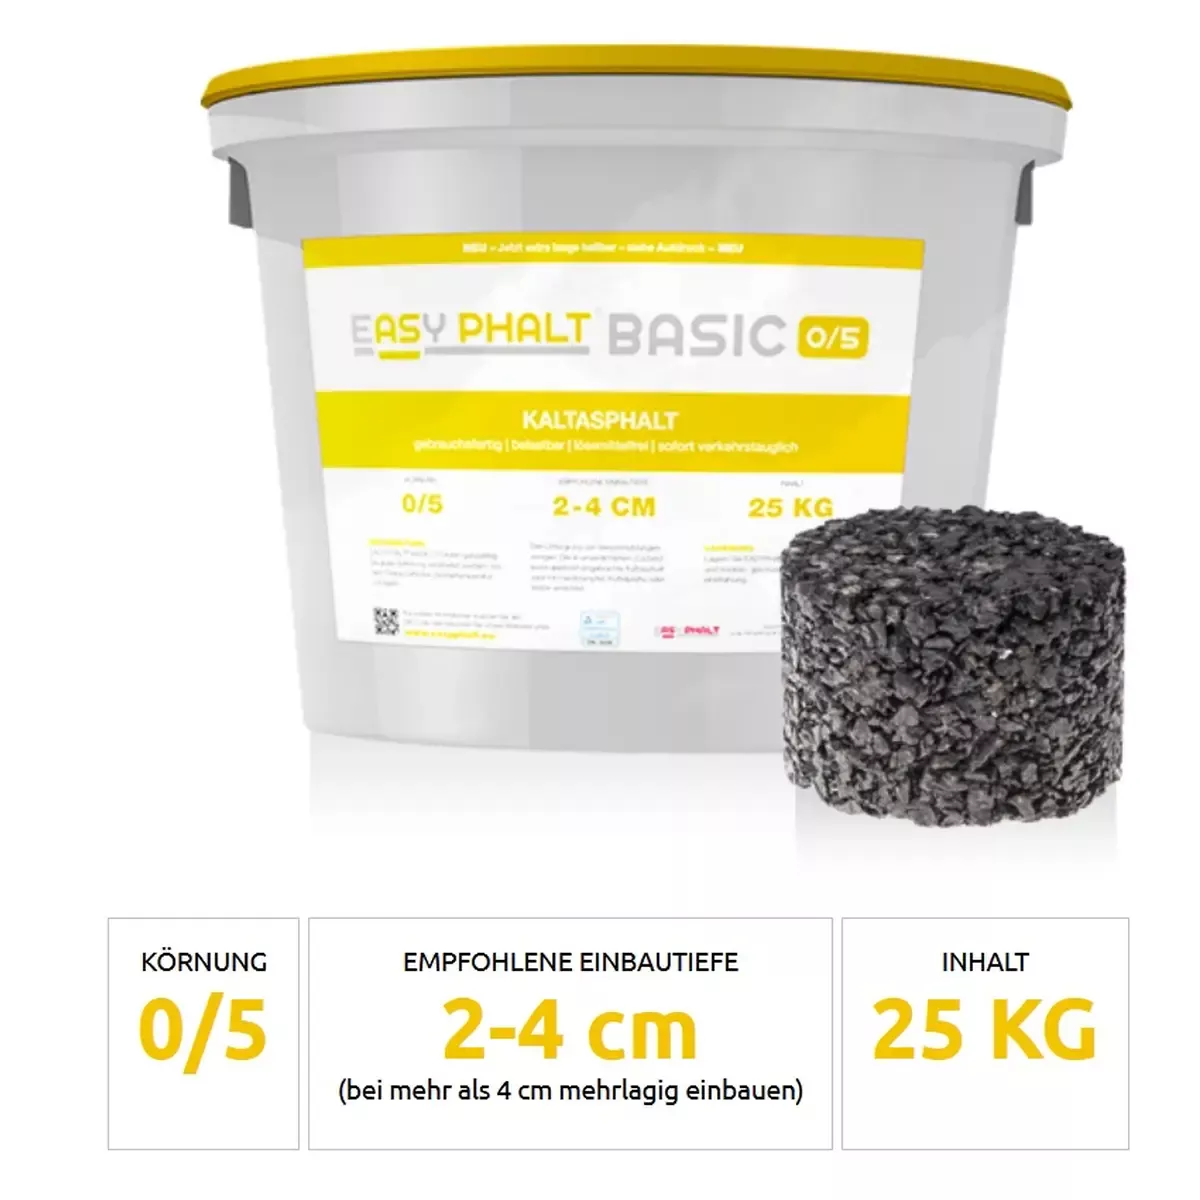 Kaltasphalt EASYPHALT®BASIC 0/5 in 25kg Eimer - 3 Paletten (=72 Eimer)